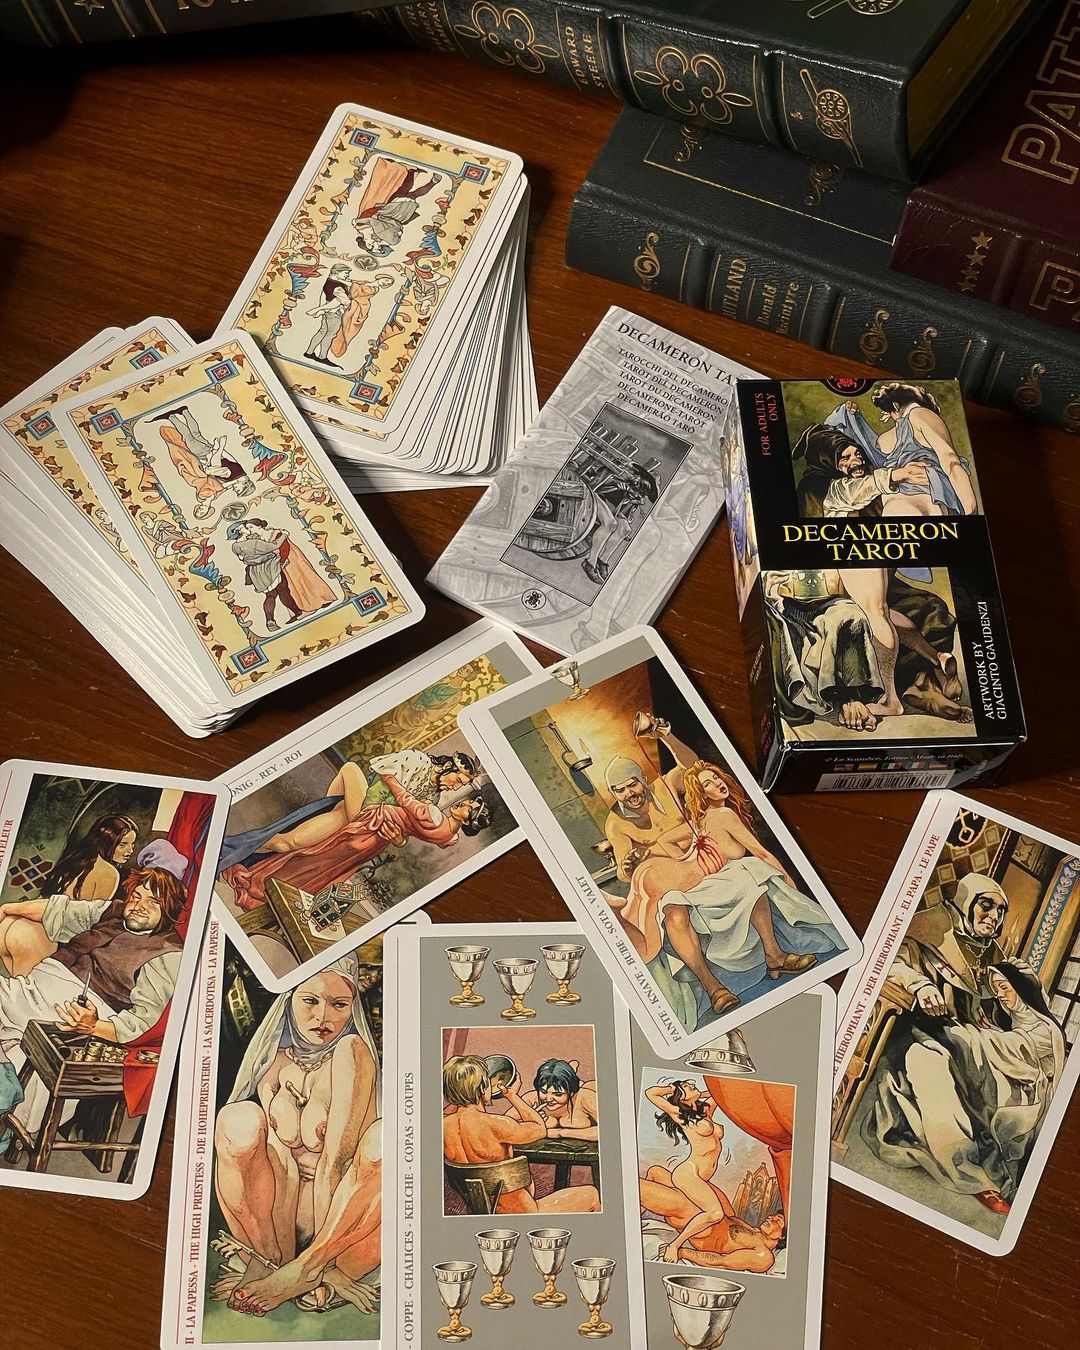 Cảm Nhận Về Bộ Bài Decameron Tarot - Tìm Lại Ý Chí Tự Do Dục Vọng Trong Tarot 5